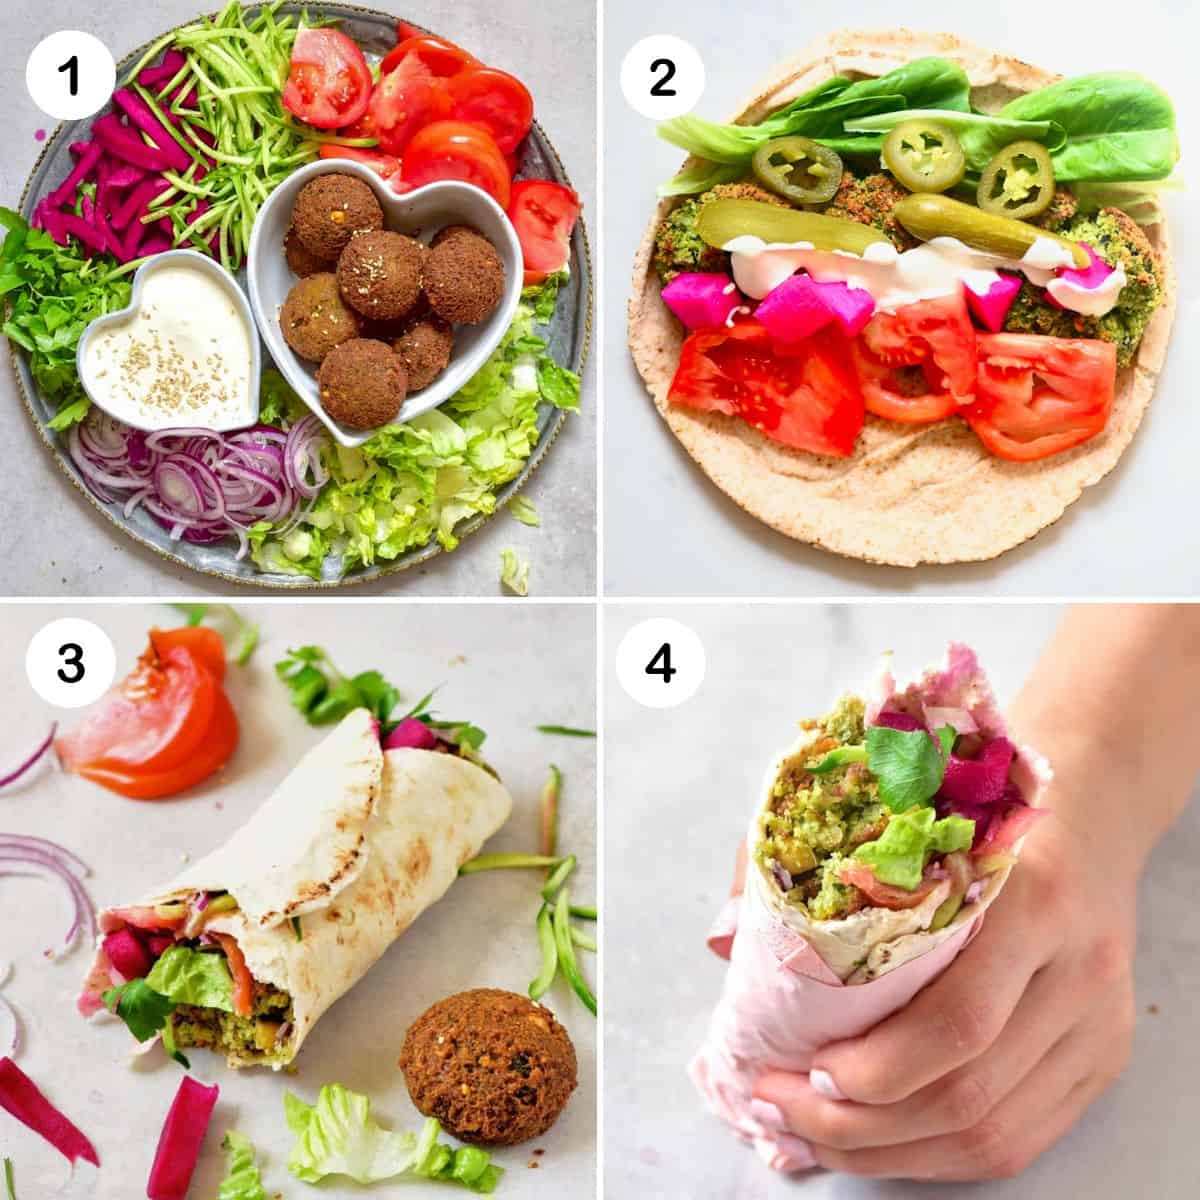 Steps for making falafel wrap